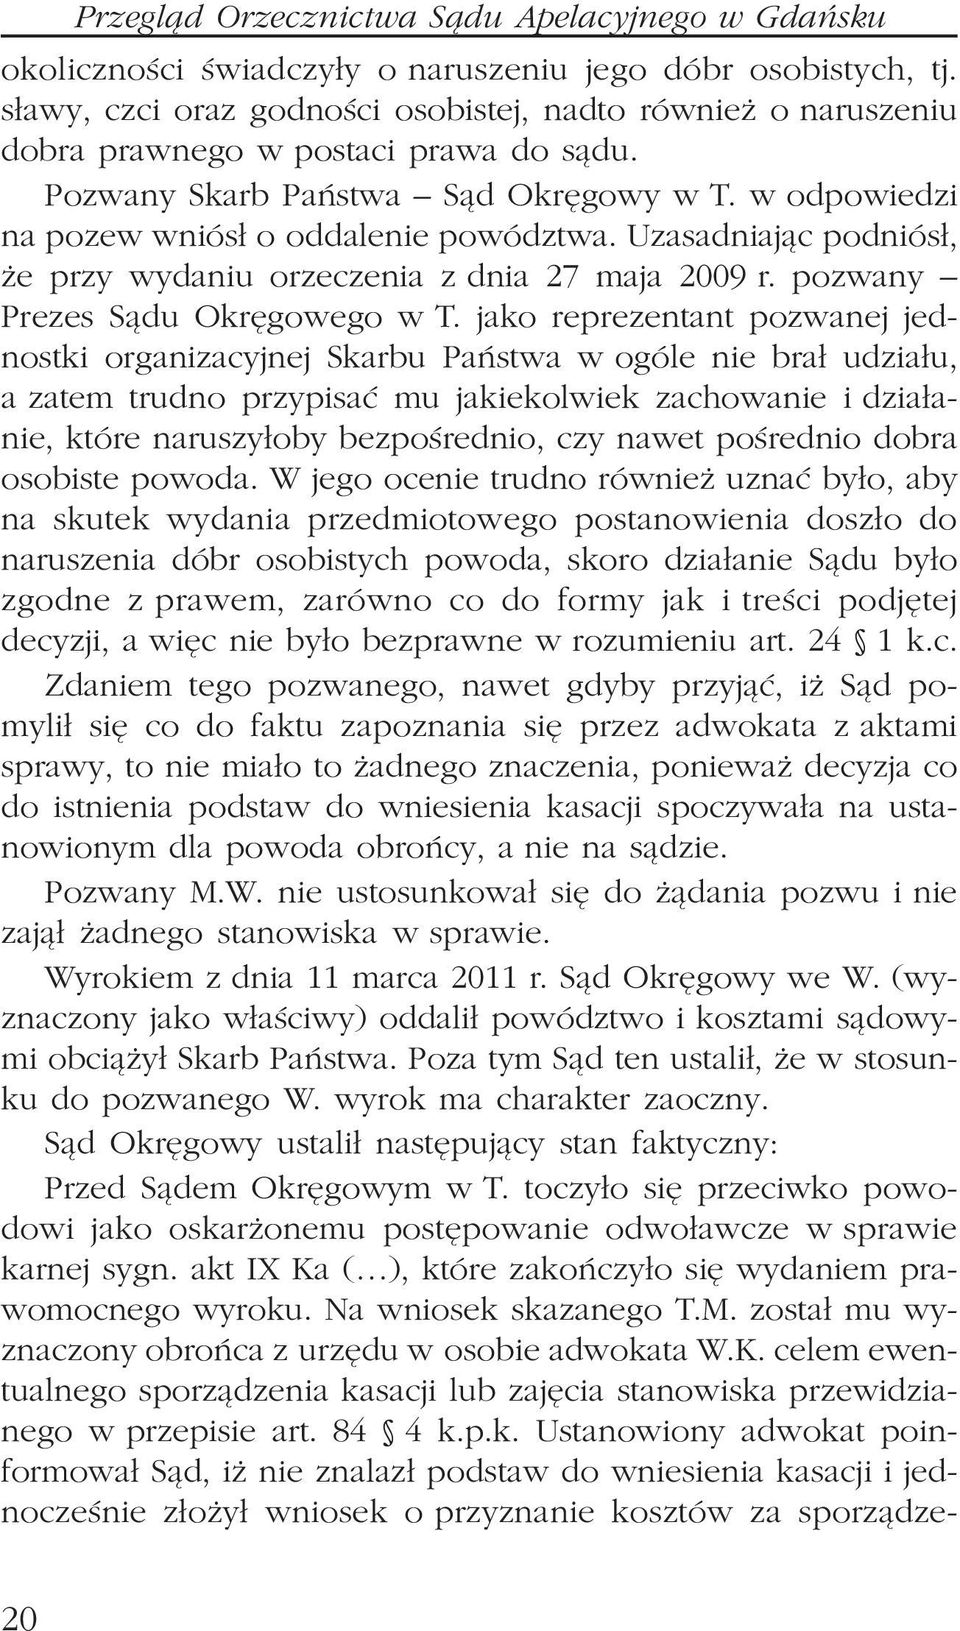 Uzasadniaj¹c podniós³, e przy wydaniu orzeczenia z dnia 27 maja 2009 r. pozwany Prezes S¹du Okrêgowego w T.